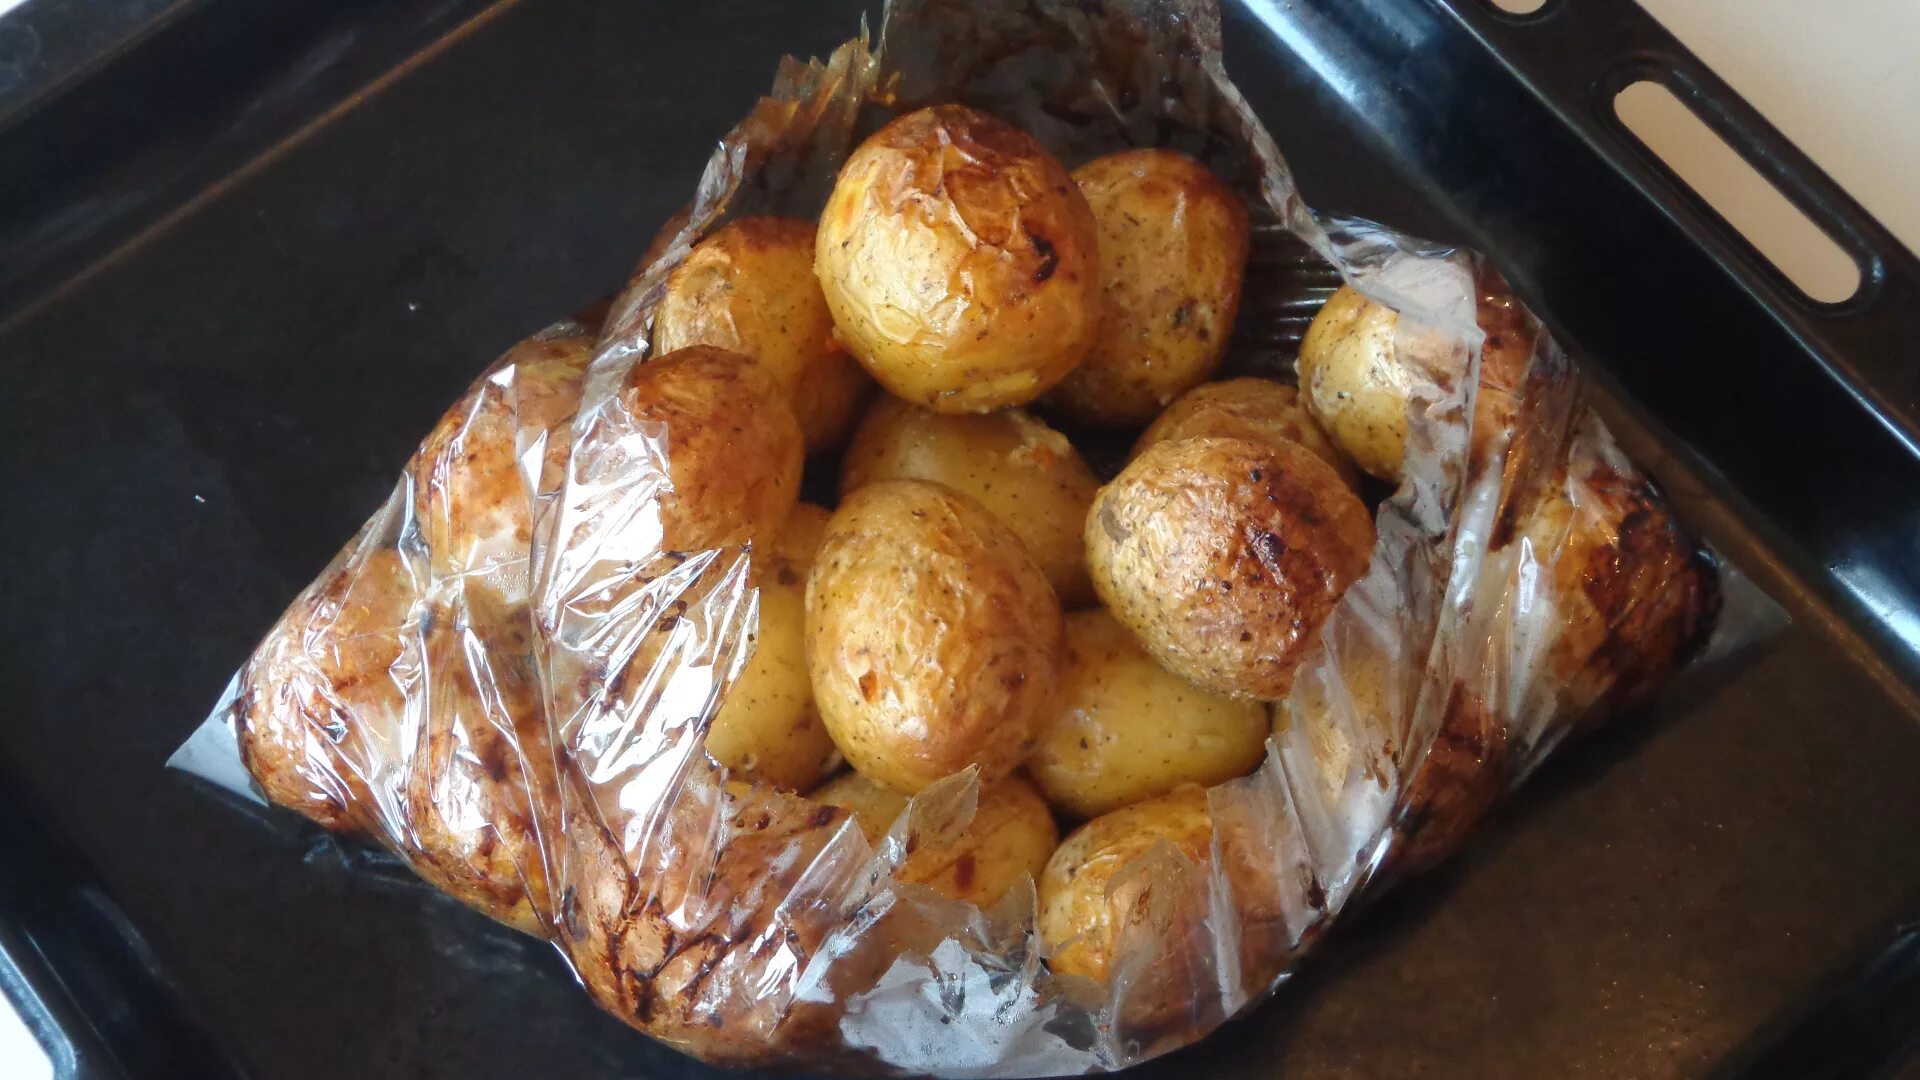 Хлеб в духовке в рукаве для запекания. Картошка в пакете в духовке. Картошка в пакете для запекания в духовке. Картофель в пакете для запекания в духовке. Картофель в пакете в духовке.